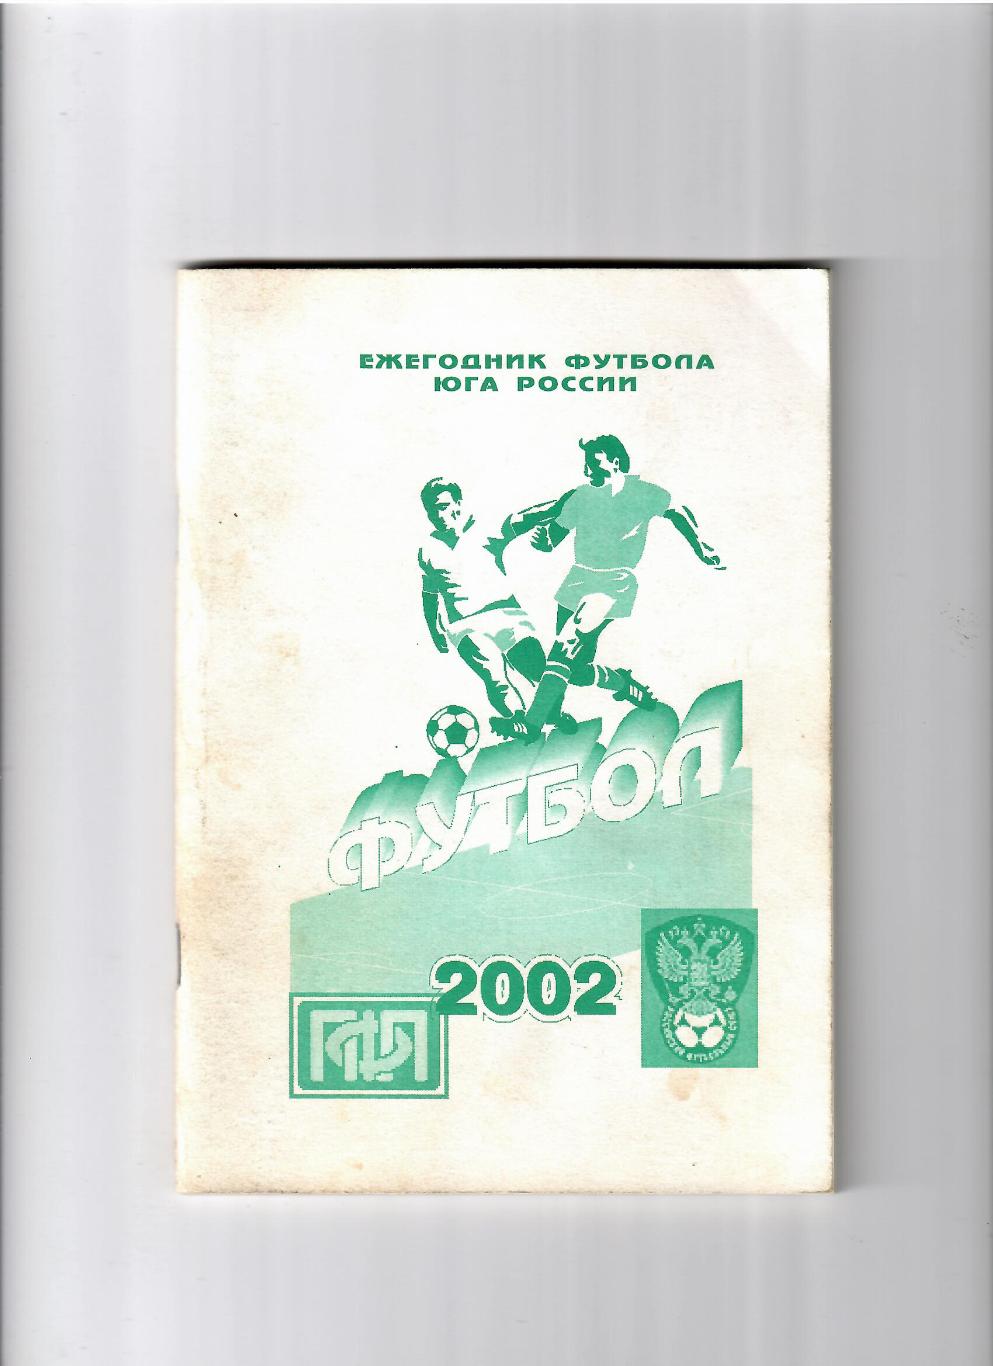 Ежегодник футбола юга России 2002